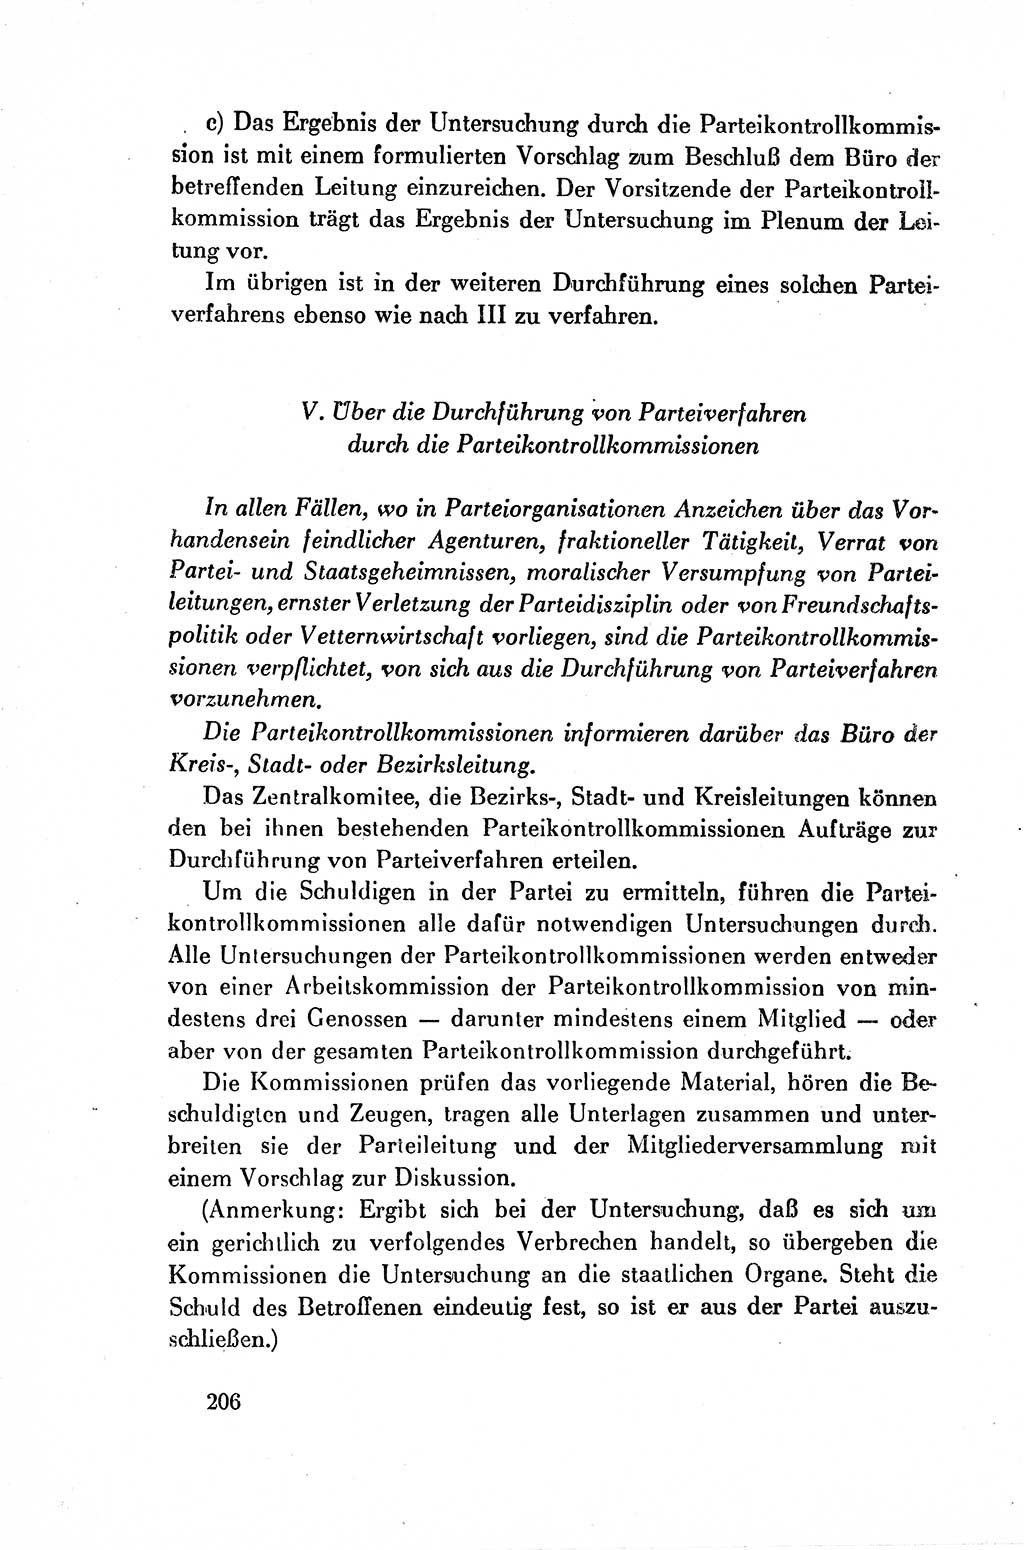 Dokumente der Sozialistischen Einheitspartei Deutschlands (SED) [Deutsche Demokratische Republik (DDR)] 1954-1955, Seite 206 (Dok. SED DDR 1954-1955, S. 206)